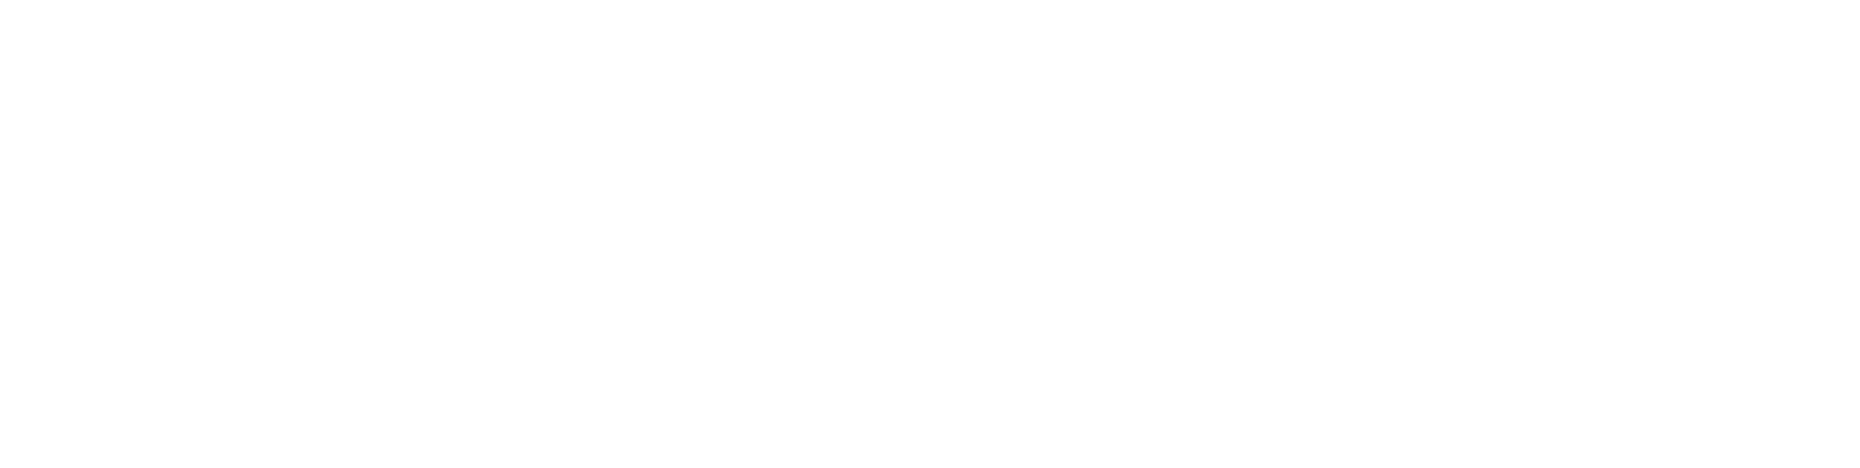 inspire-logo-white